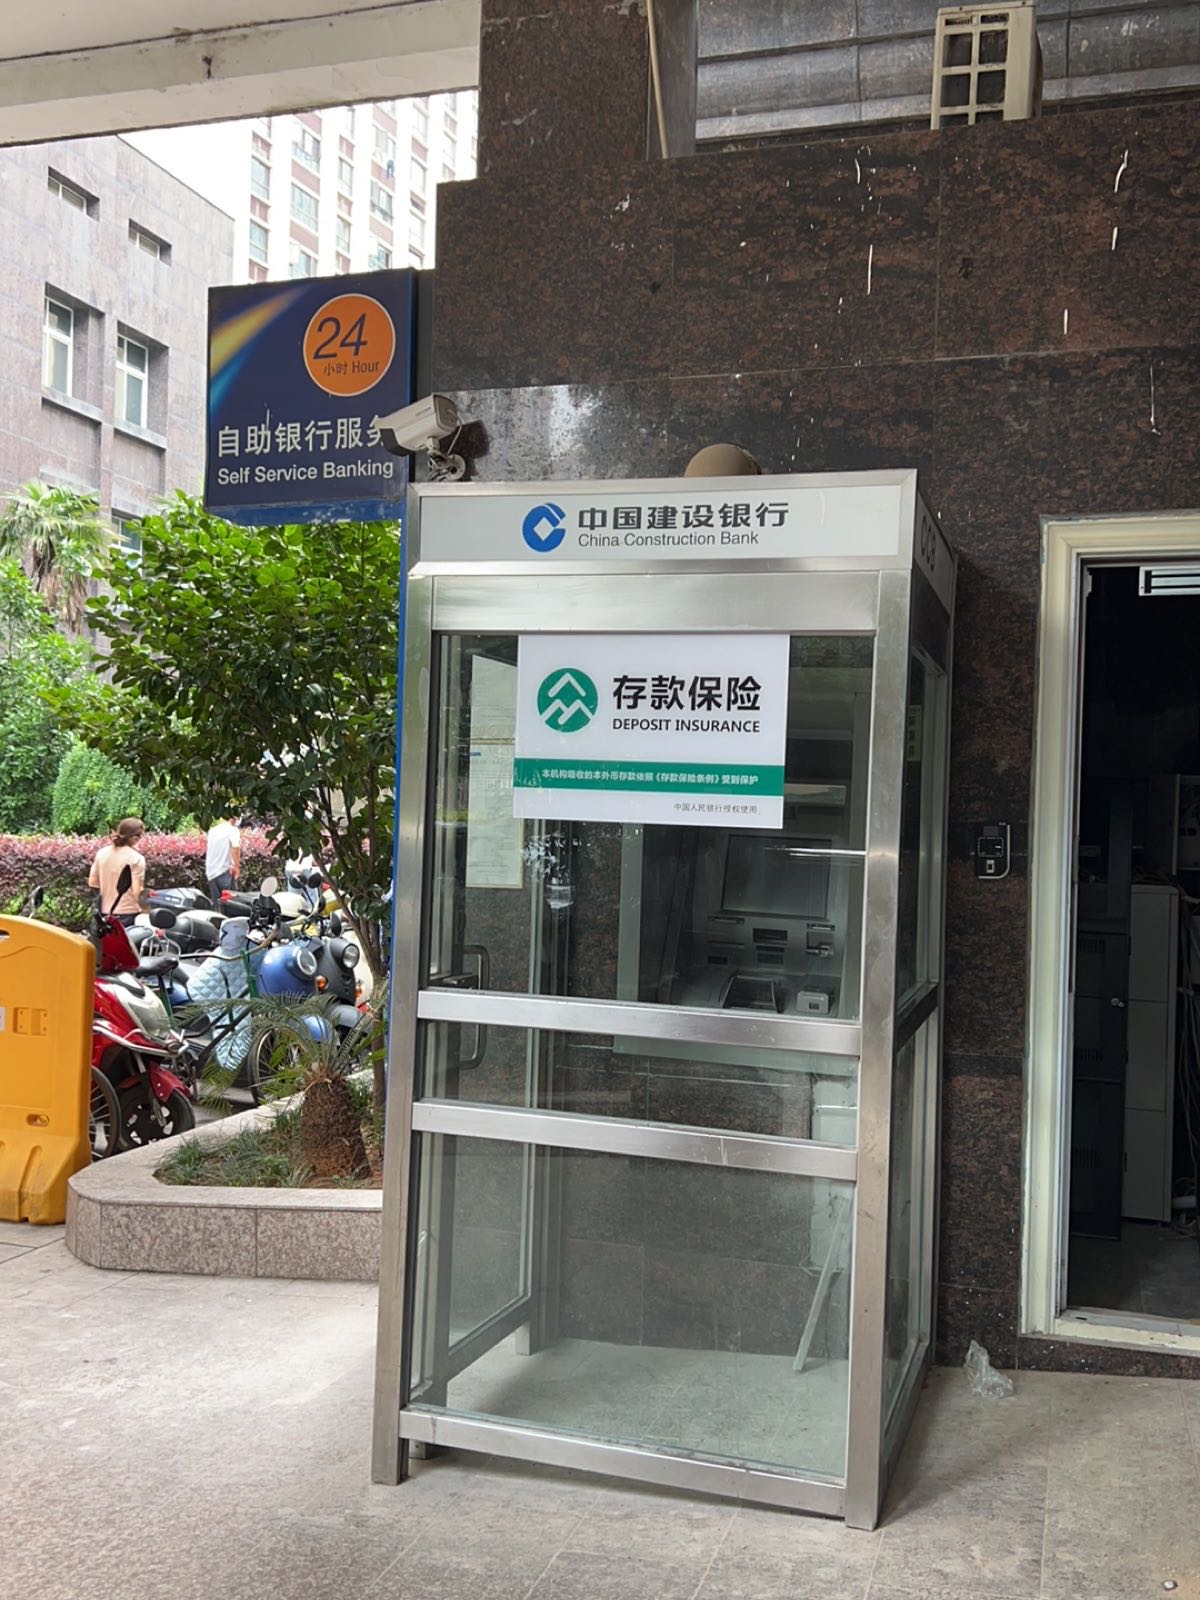 中国建设银行24小时自助性银行